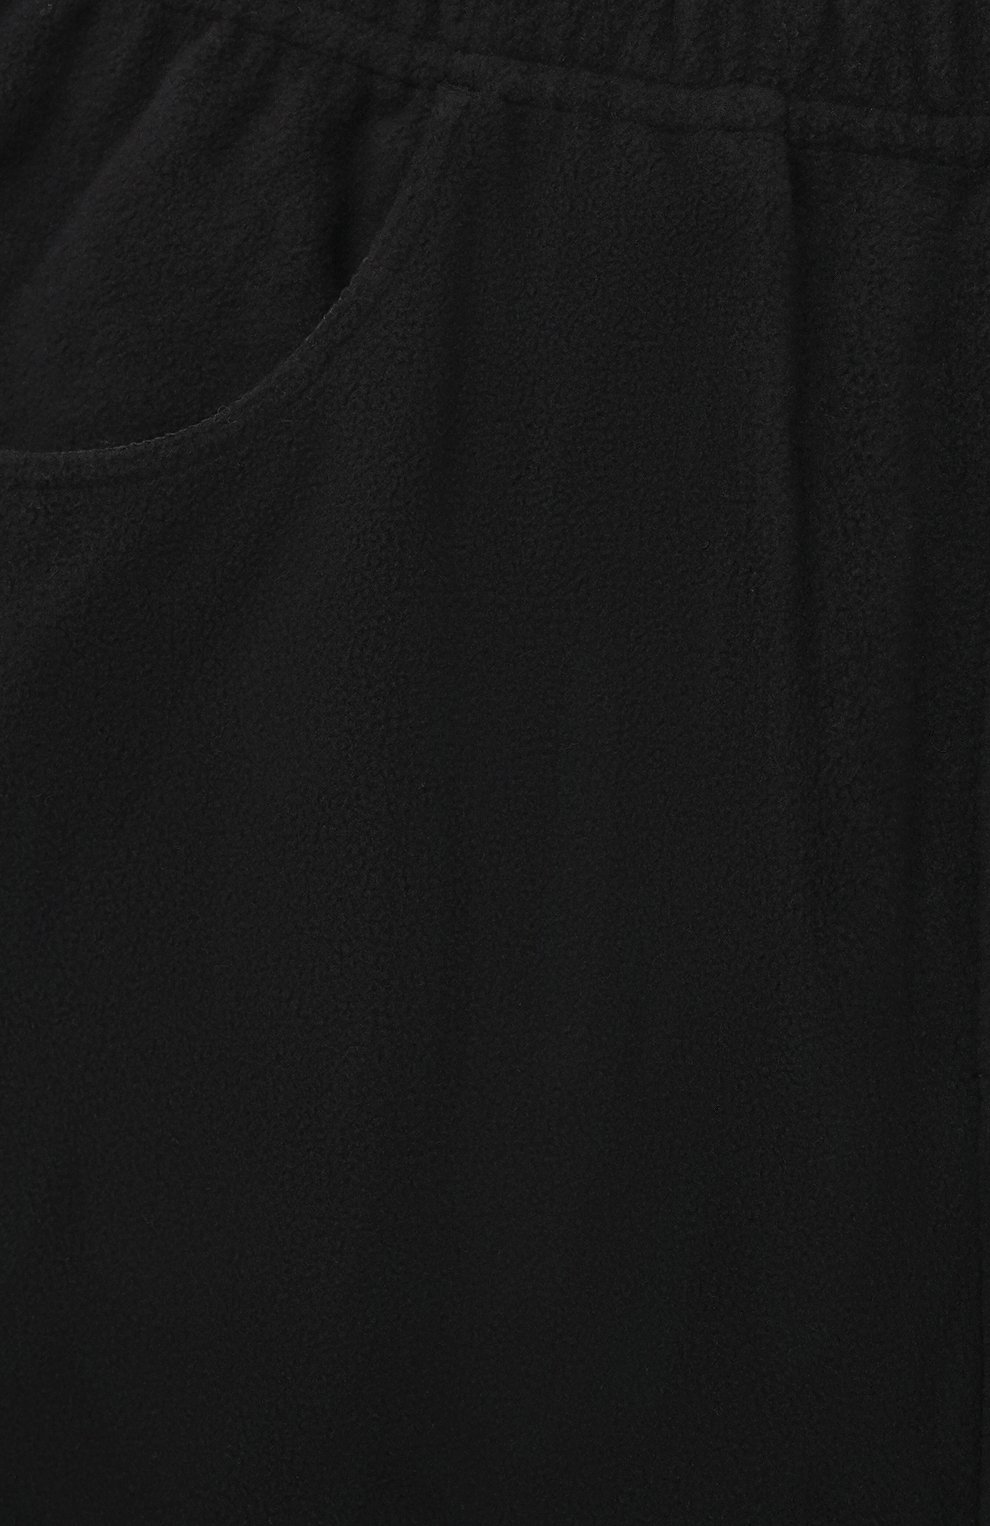 Детские брюки POIVRE BLANC черного цвета, арт. 295596 | Фото 3 (Материал внешний: Синтетический материал; Ростовка одежда: 10 - 11 лет | 140 - 146см, 3 года | 98 см, 4 года | 104 см, 5 лет | 110 см, 6 лет | 116 см, 8 лет | 128 см)